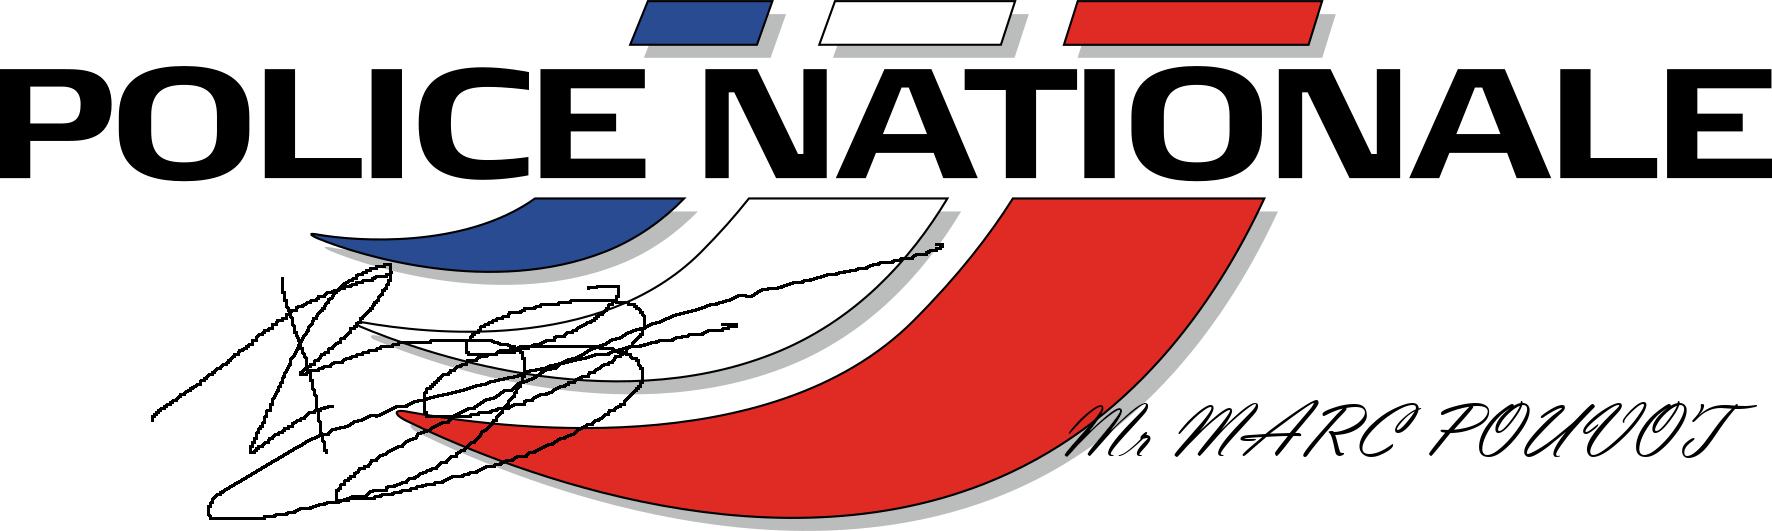 Logo-police-nationale-france.png